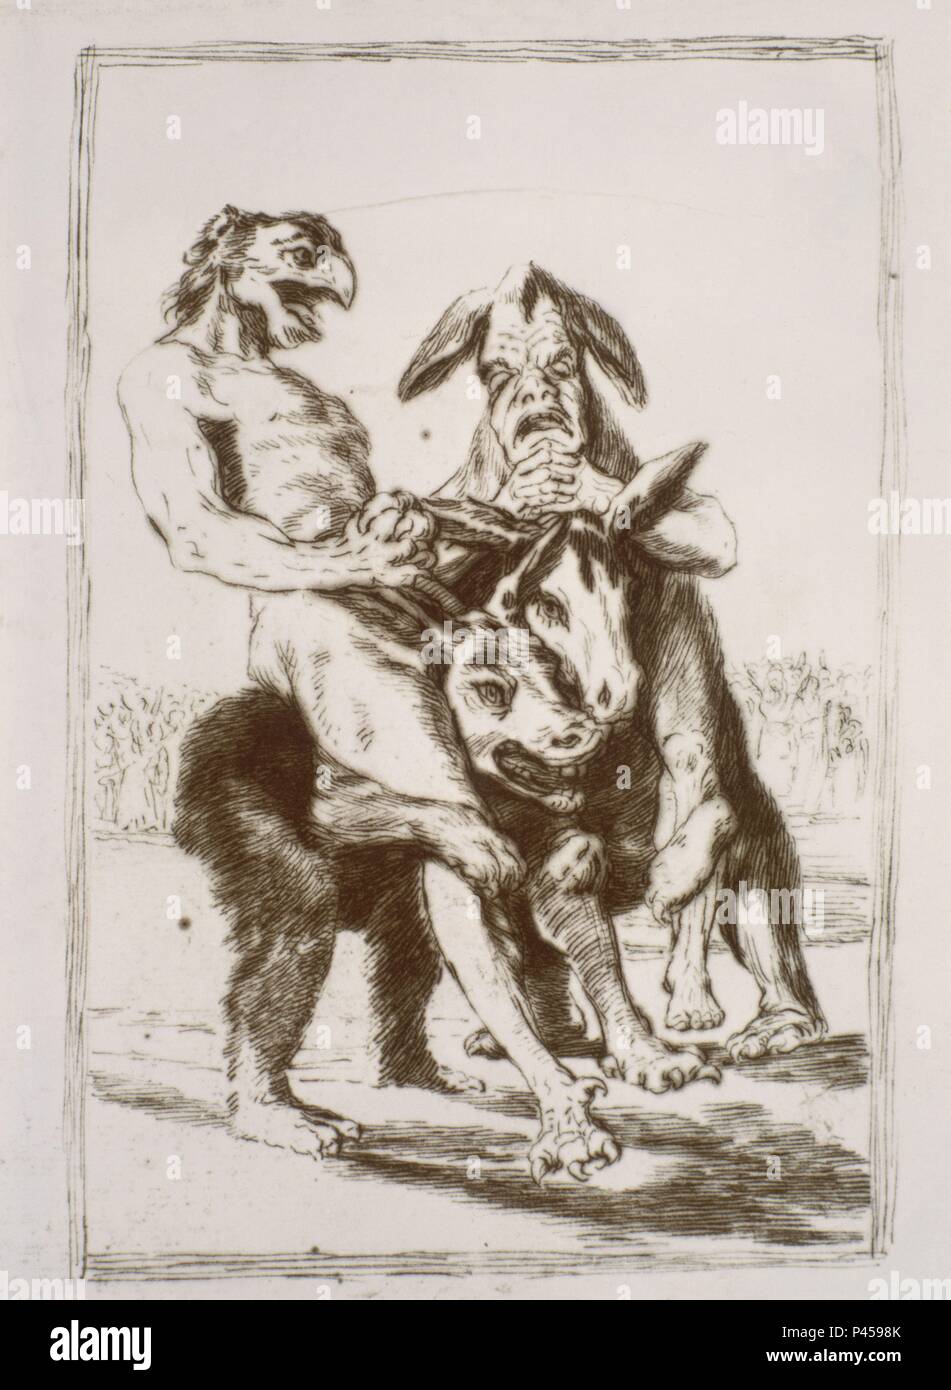 Vorbereitung der Zeichnung sehen Sie, wie ernst Sie sind!, Platte 63 der 'Los Caprichos' - 18. Autor: Francisco de Goya (1746-1828). Lage: Museo del Prado - DIBUJOS, MADRID, SPANIEN. Auch als: DIBUJO PREPARATORIO PARA EL CAPRICHO 63 - MIREN QUE GRABES! bekannt. Stockfoto